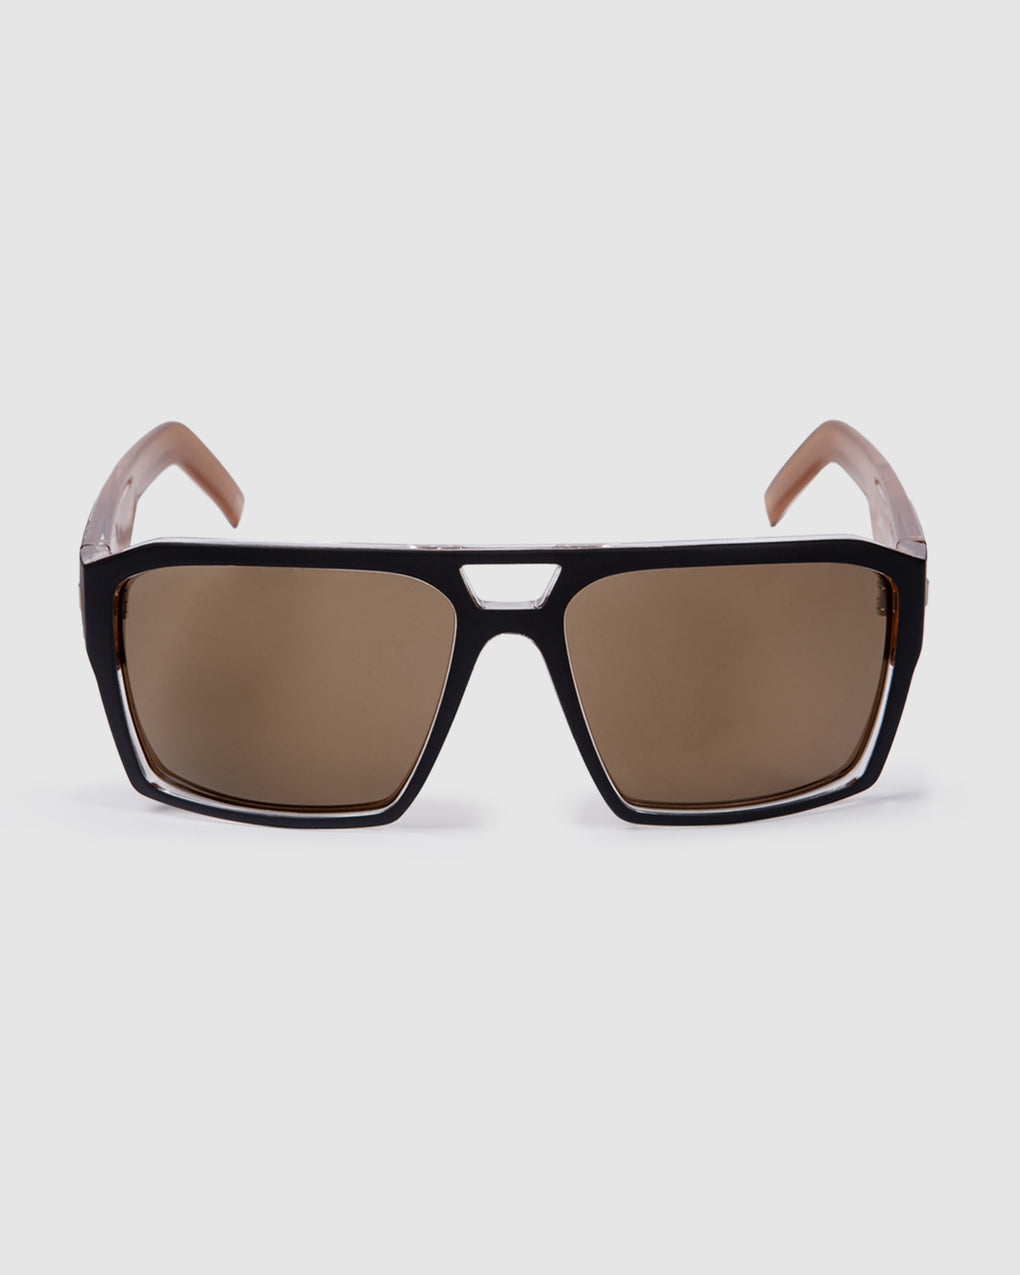 UNIT Sunglasses Vault - Matte Black Gold Polarised